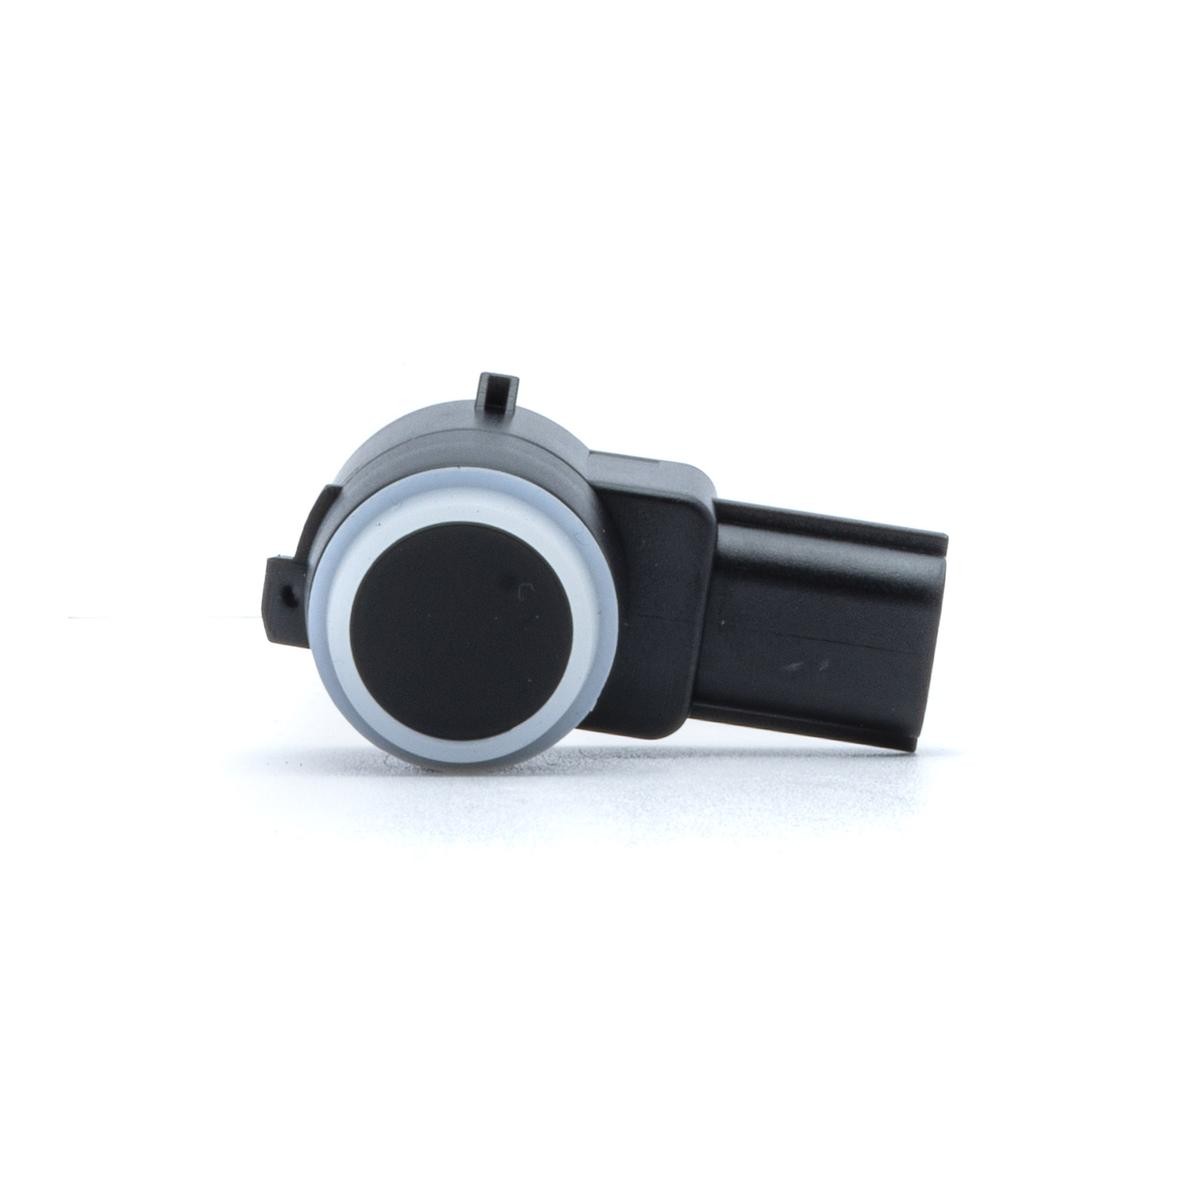 EINPARTS Rear, black, Ultrasonic Sensor Reversing sensors EPPDC75 buy